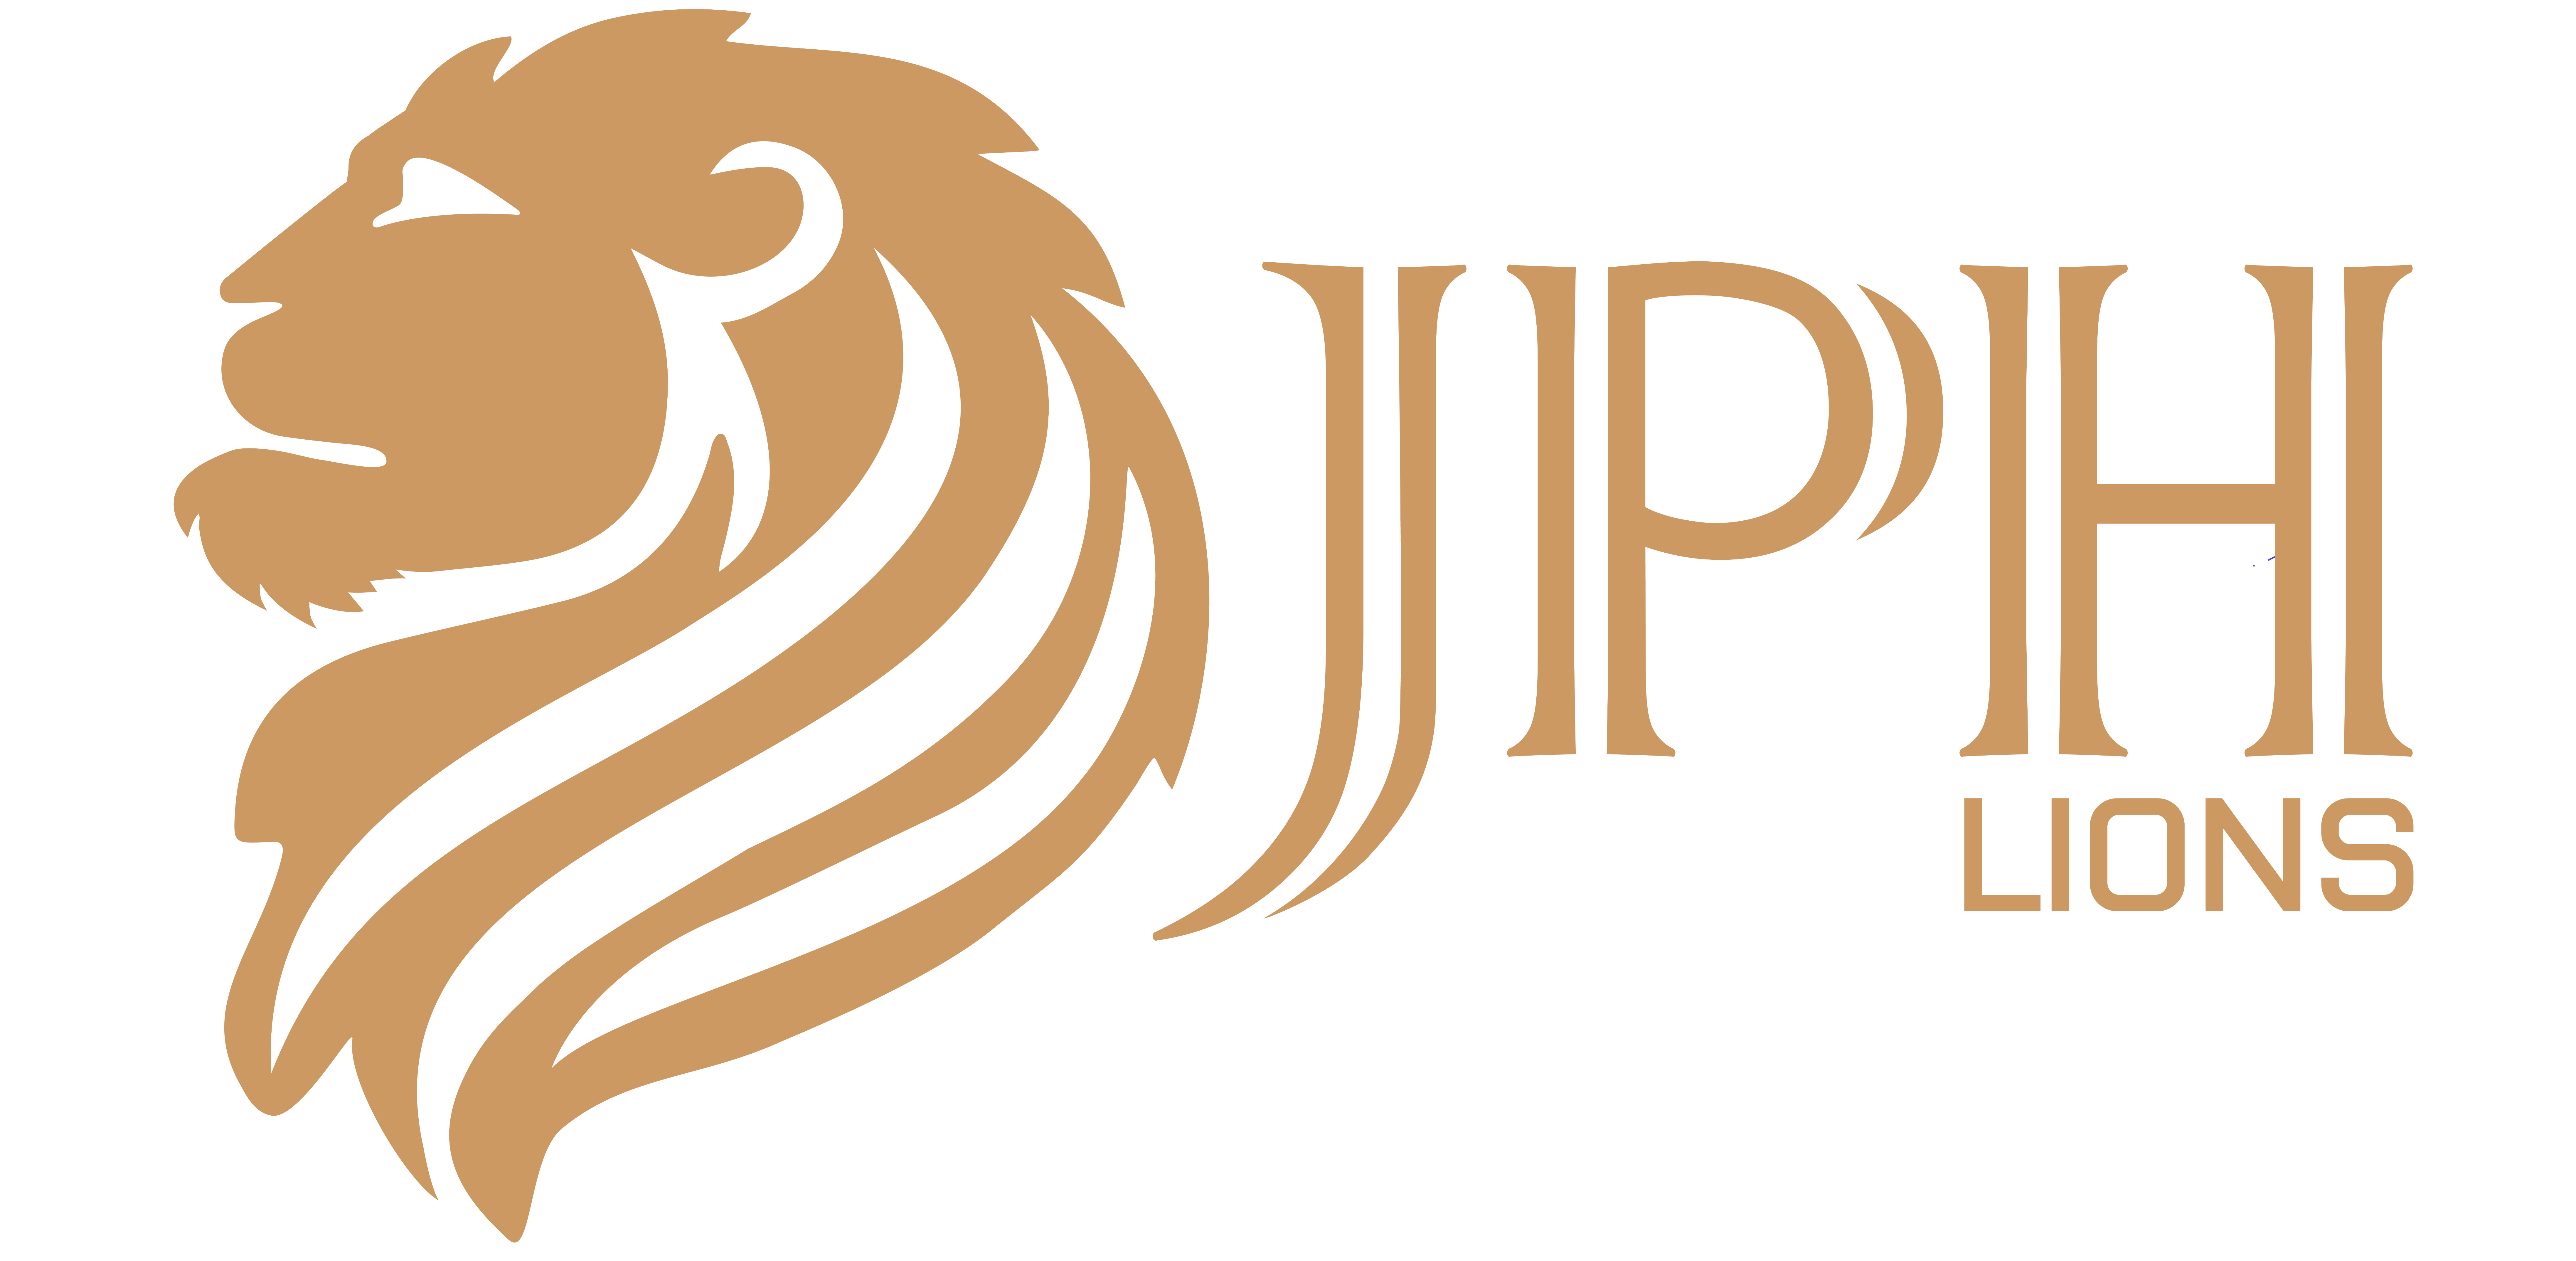 JPH Lions logo